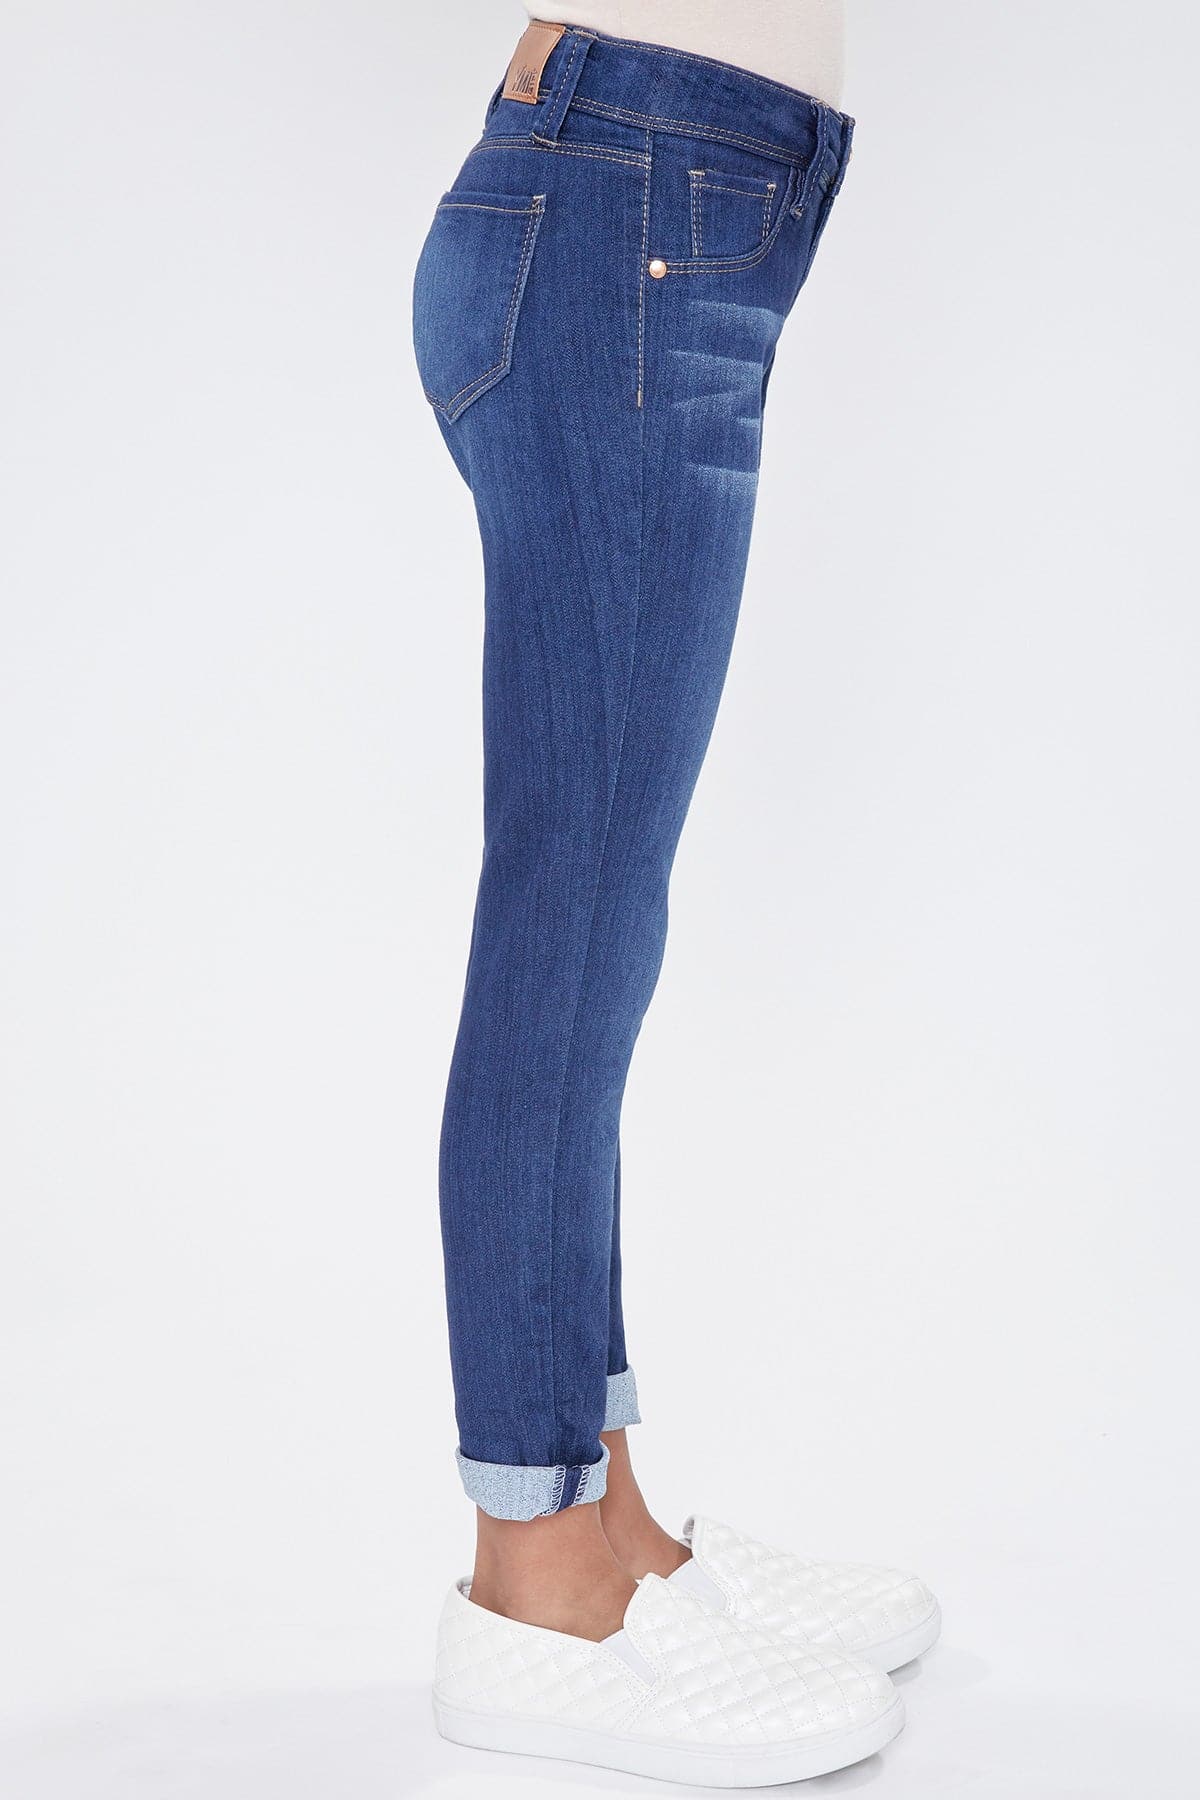 from – JEANS Girls YMI Skinny Cuff Denim Optional YMI Jeans